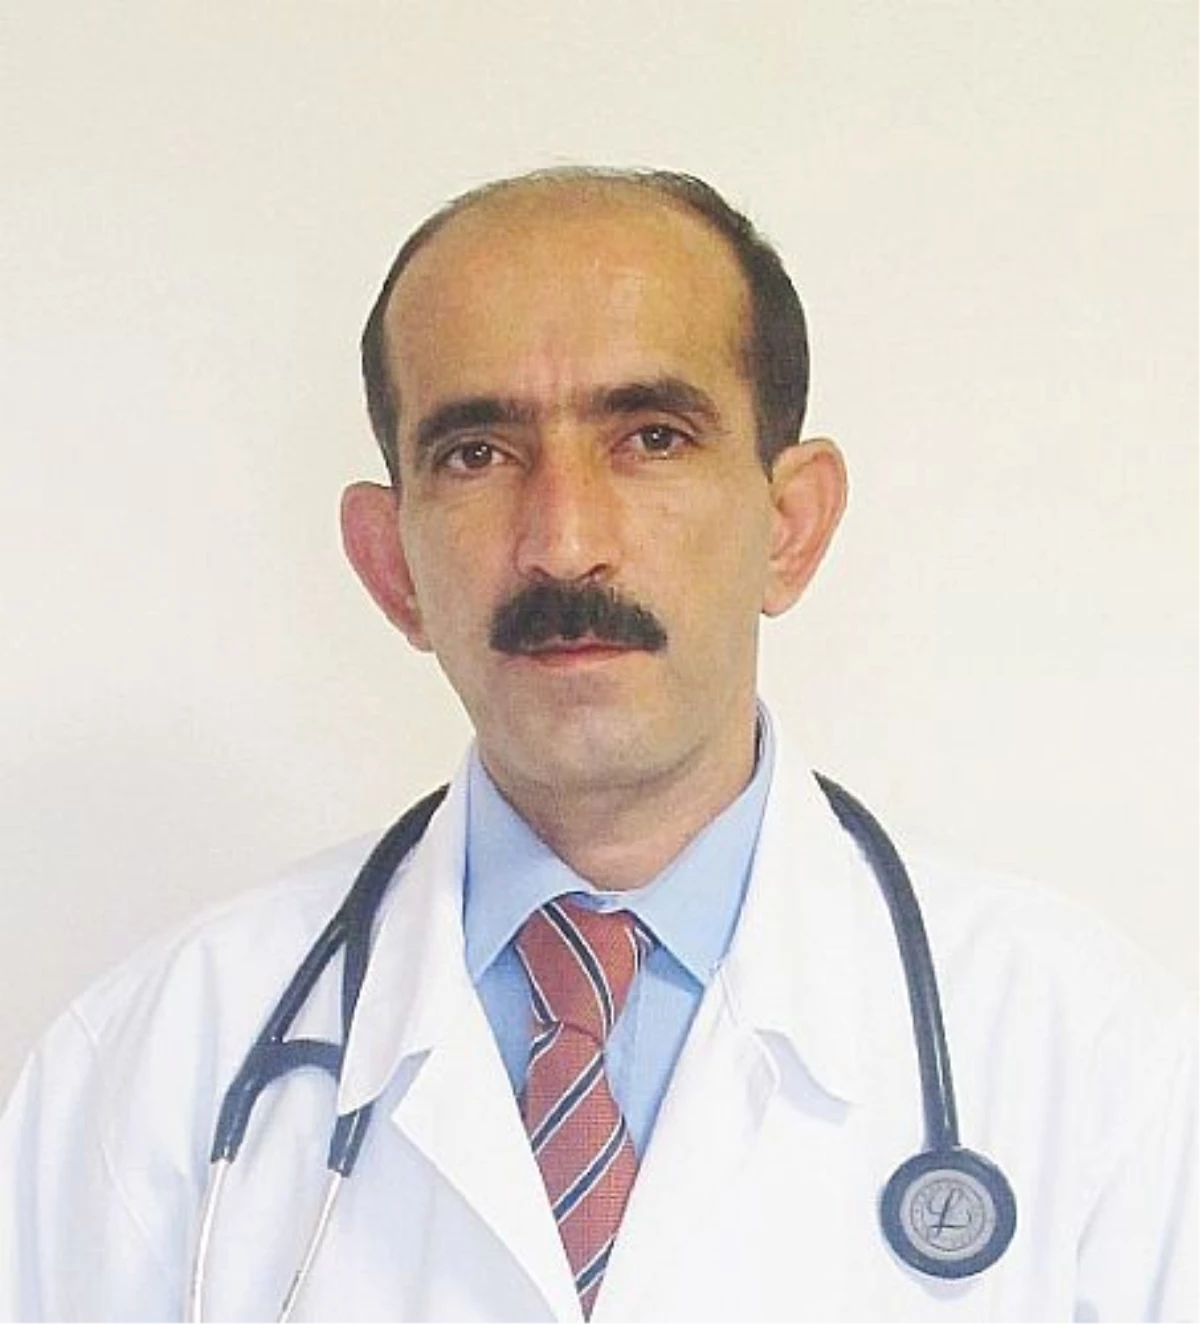 İç Hastalıkları Uzmanı Dr. Alper Arslan Açıklaması